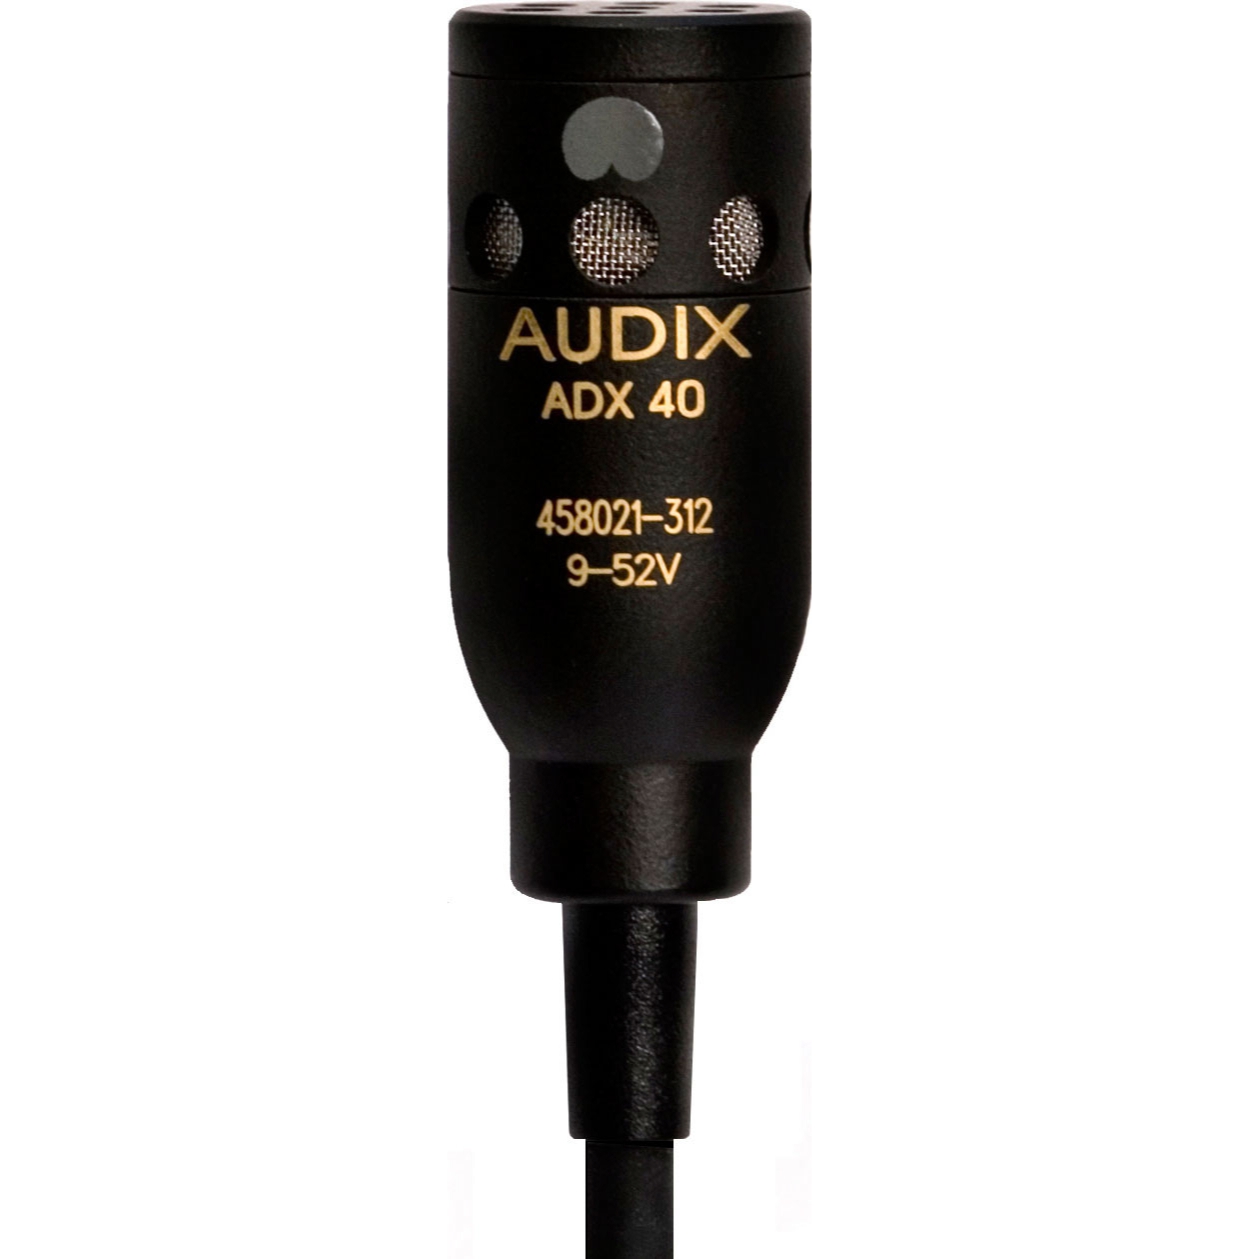 Студийные микрофоны AUDIX ADX40HC микрофон mobicent bm 800 конденсаторный с ветрозащитой кабелем и переходником для телефона